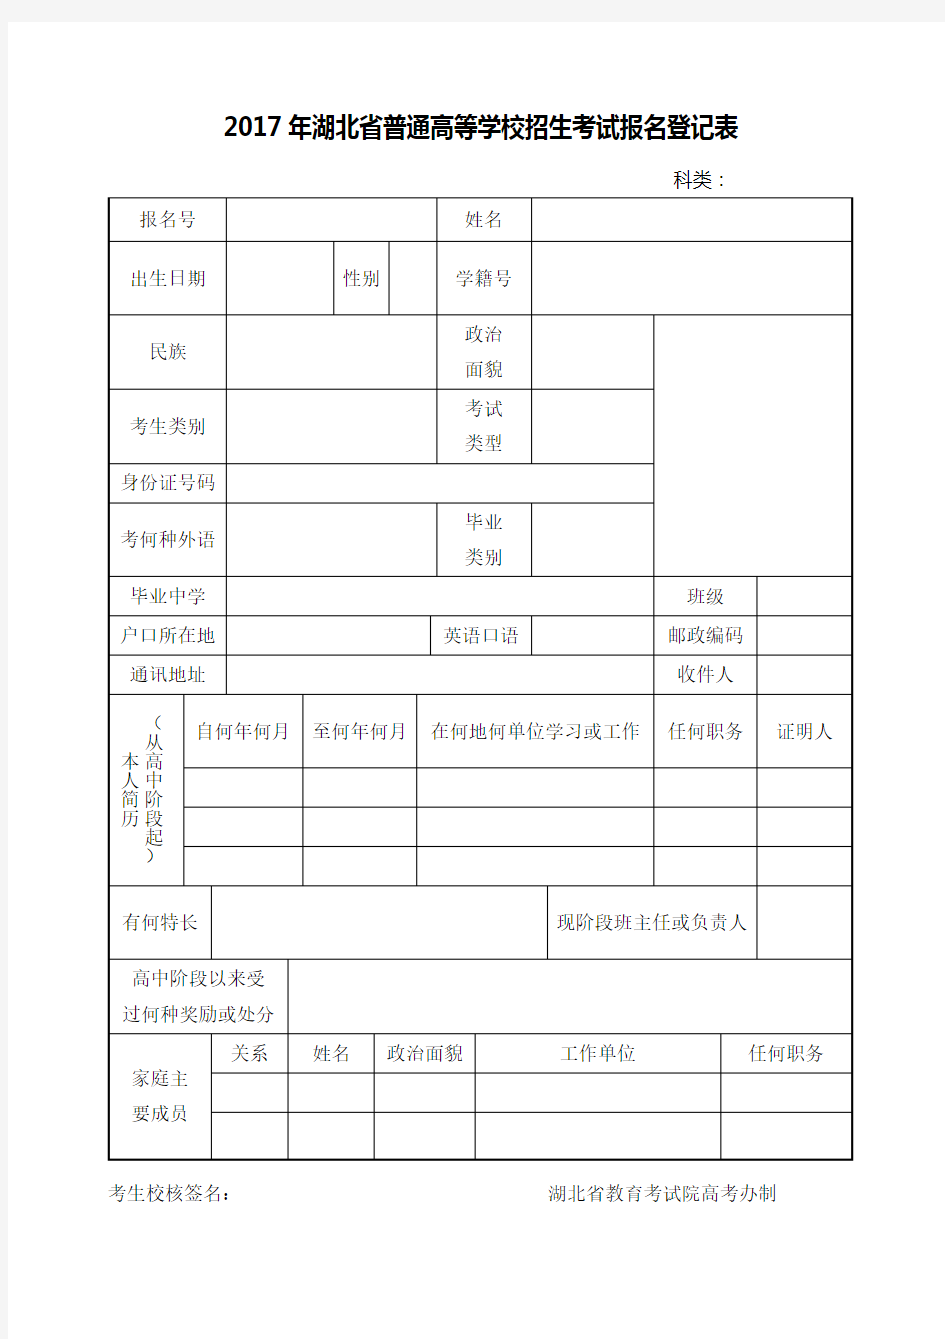 2017年湖北省普通高等学校招生考试报名登记表